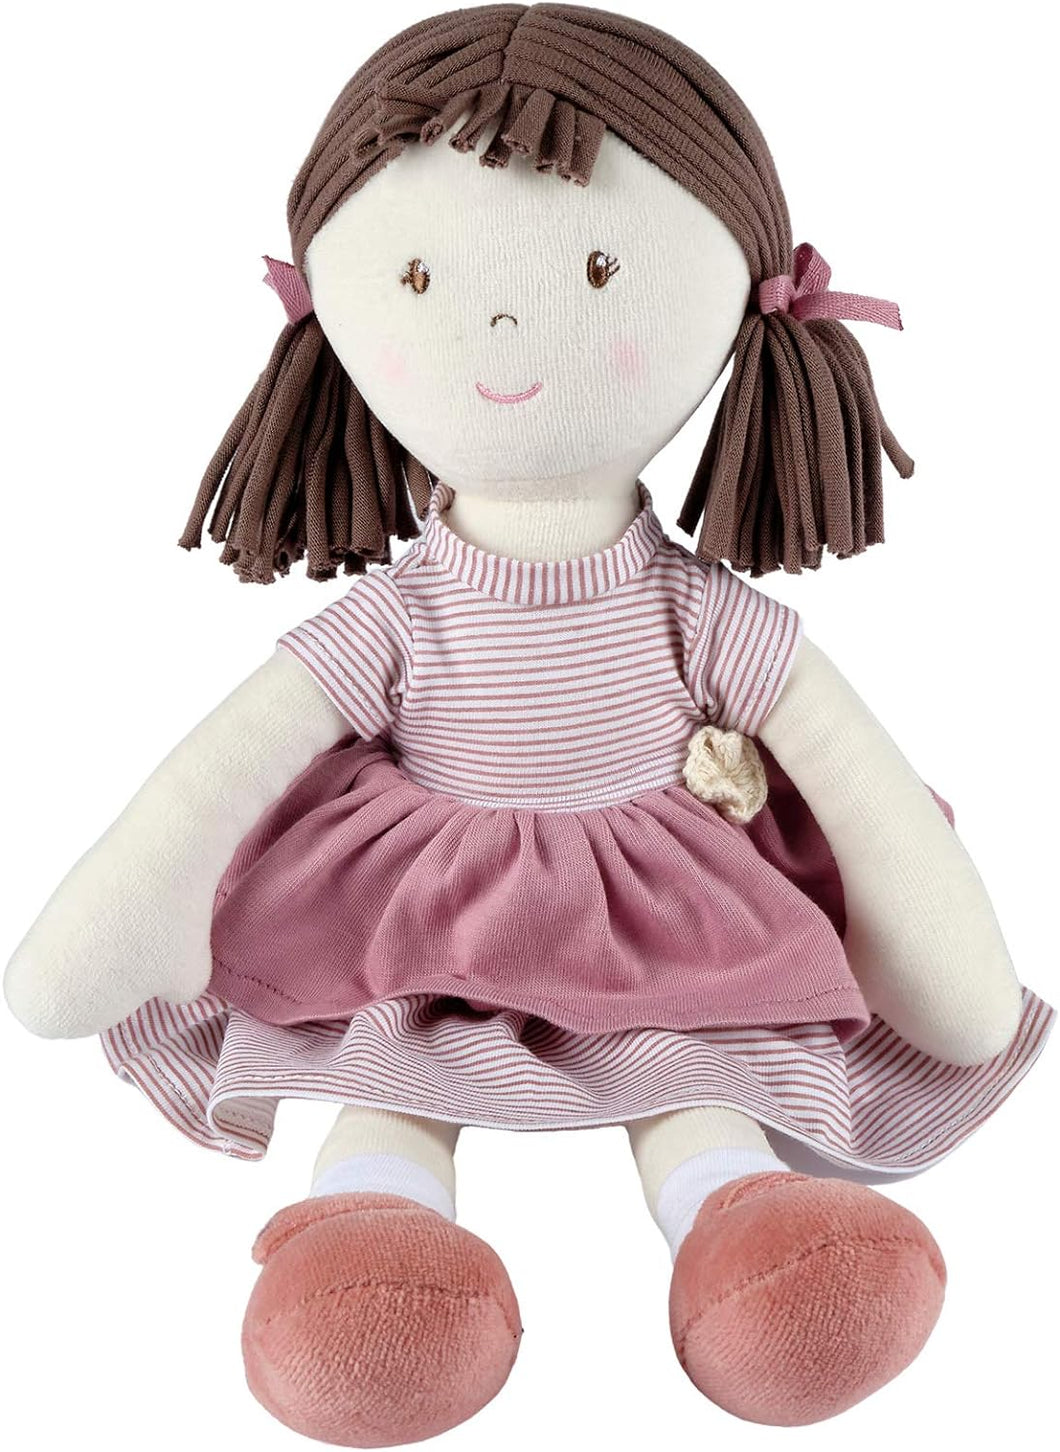 Tikiri Toys Bonikka Brook - Brown Hair with Pink Dress